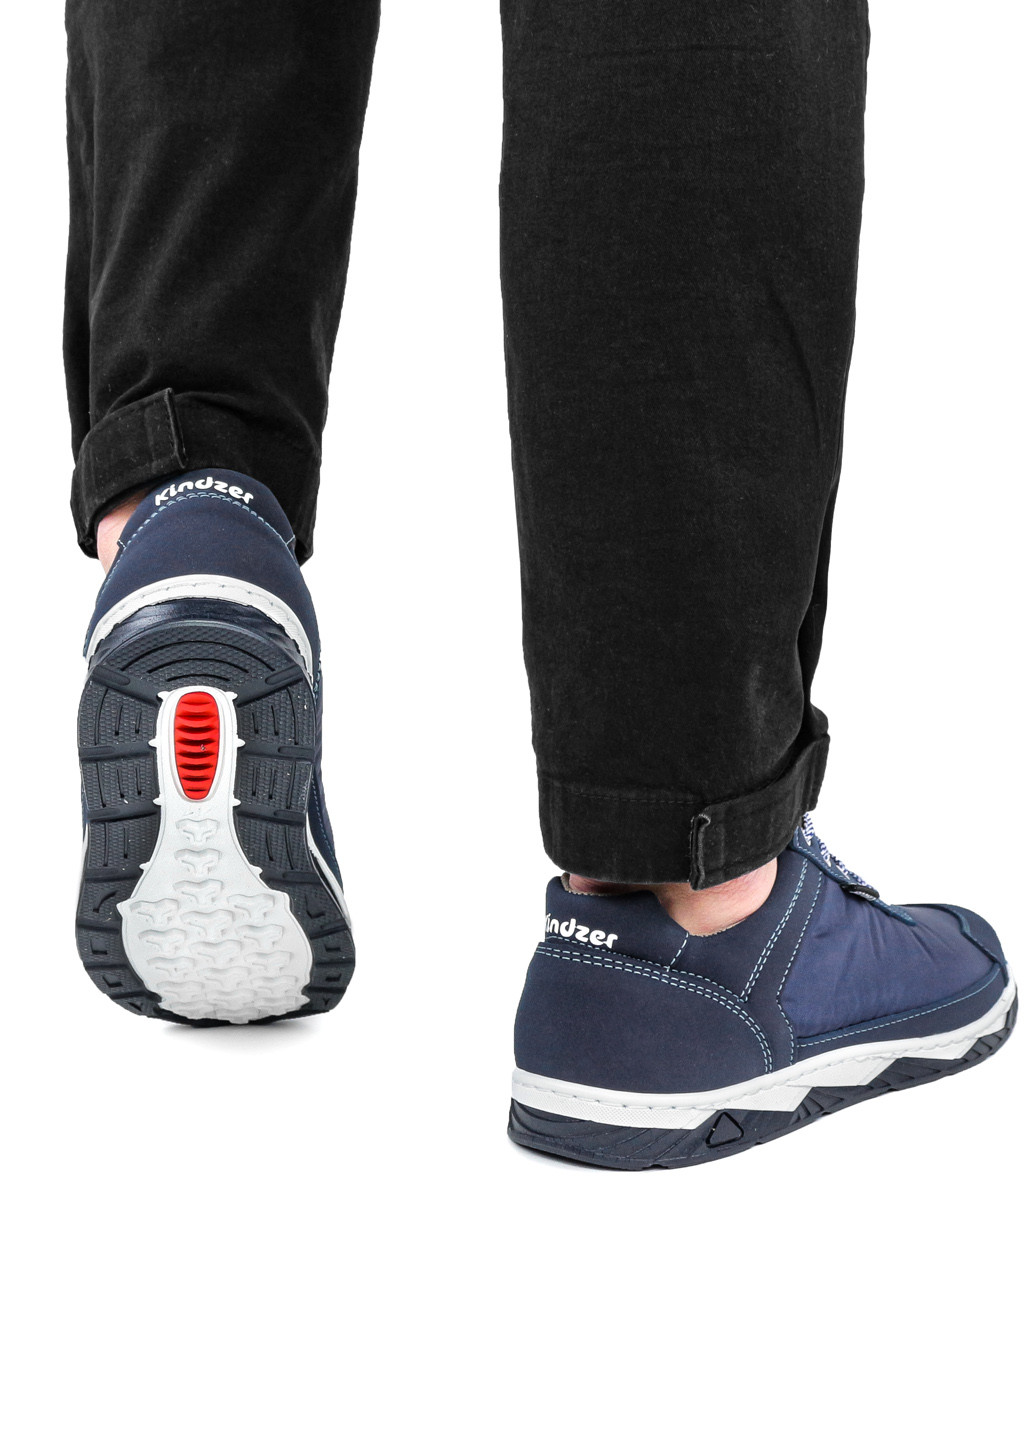 Синие демисезонные кроссовки мужские демисезонные синие из текстиля 1356011063 Kindzer